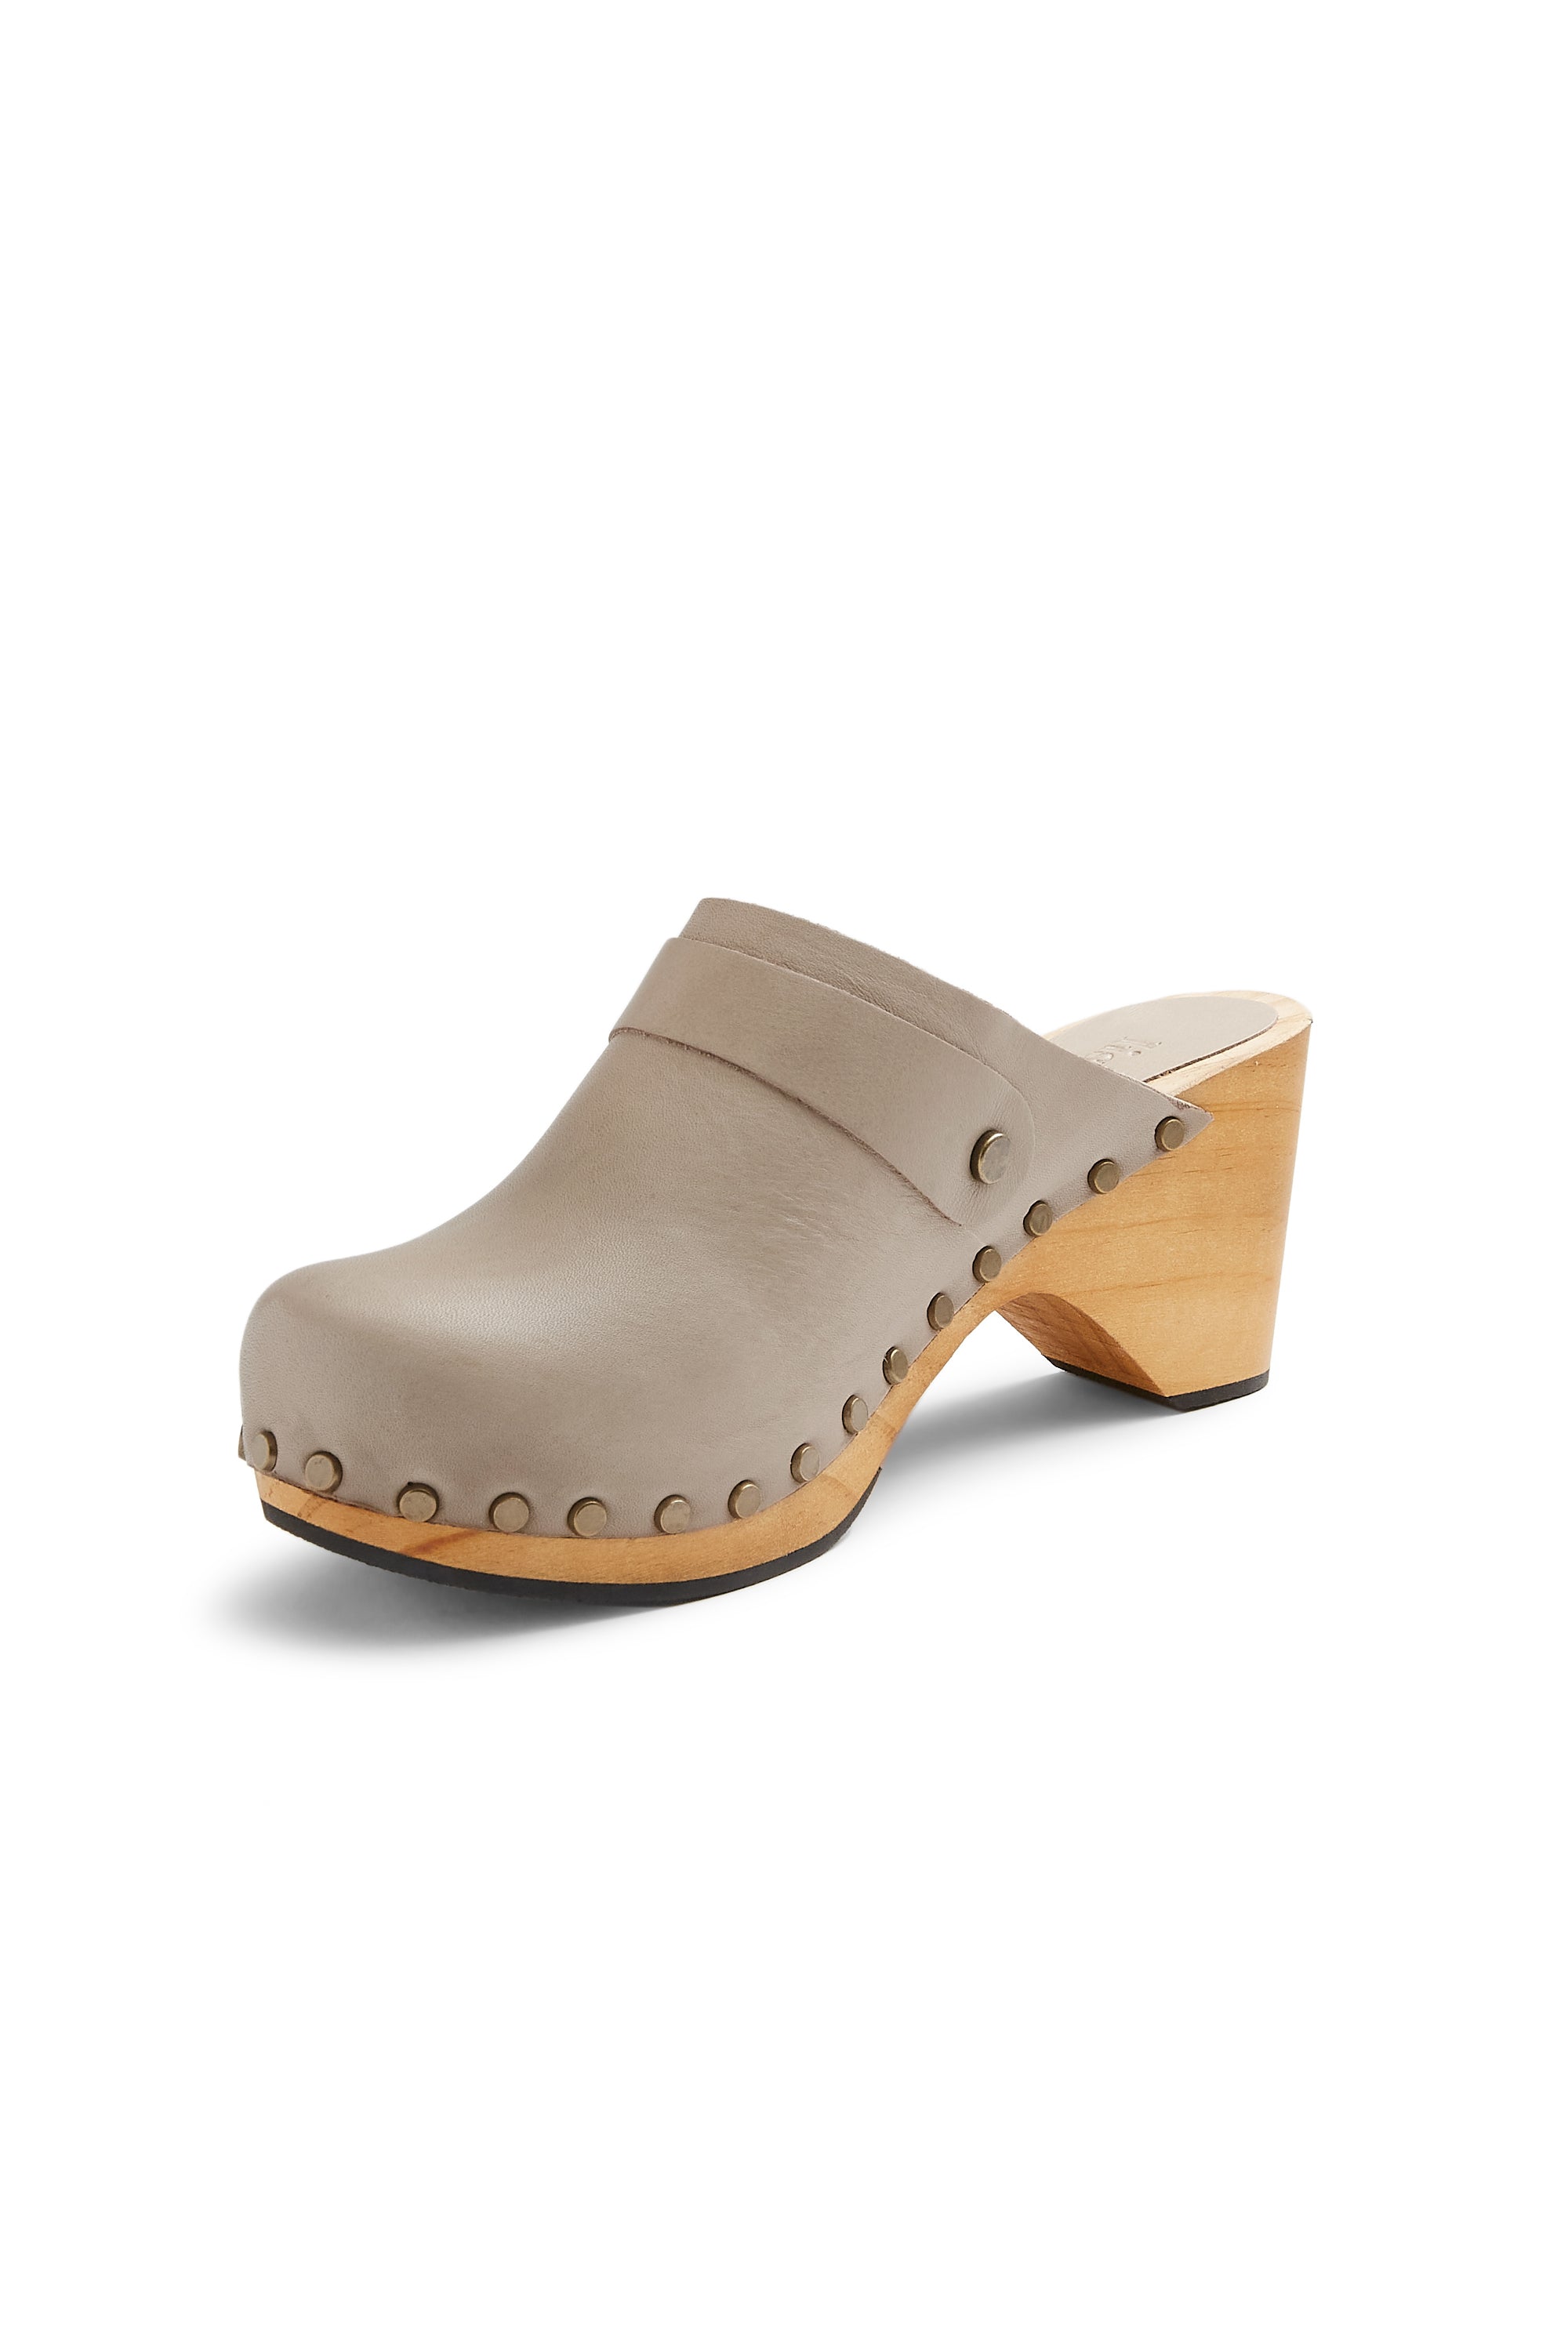 classic high heel clog in ecru leather